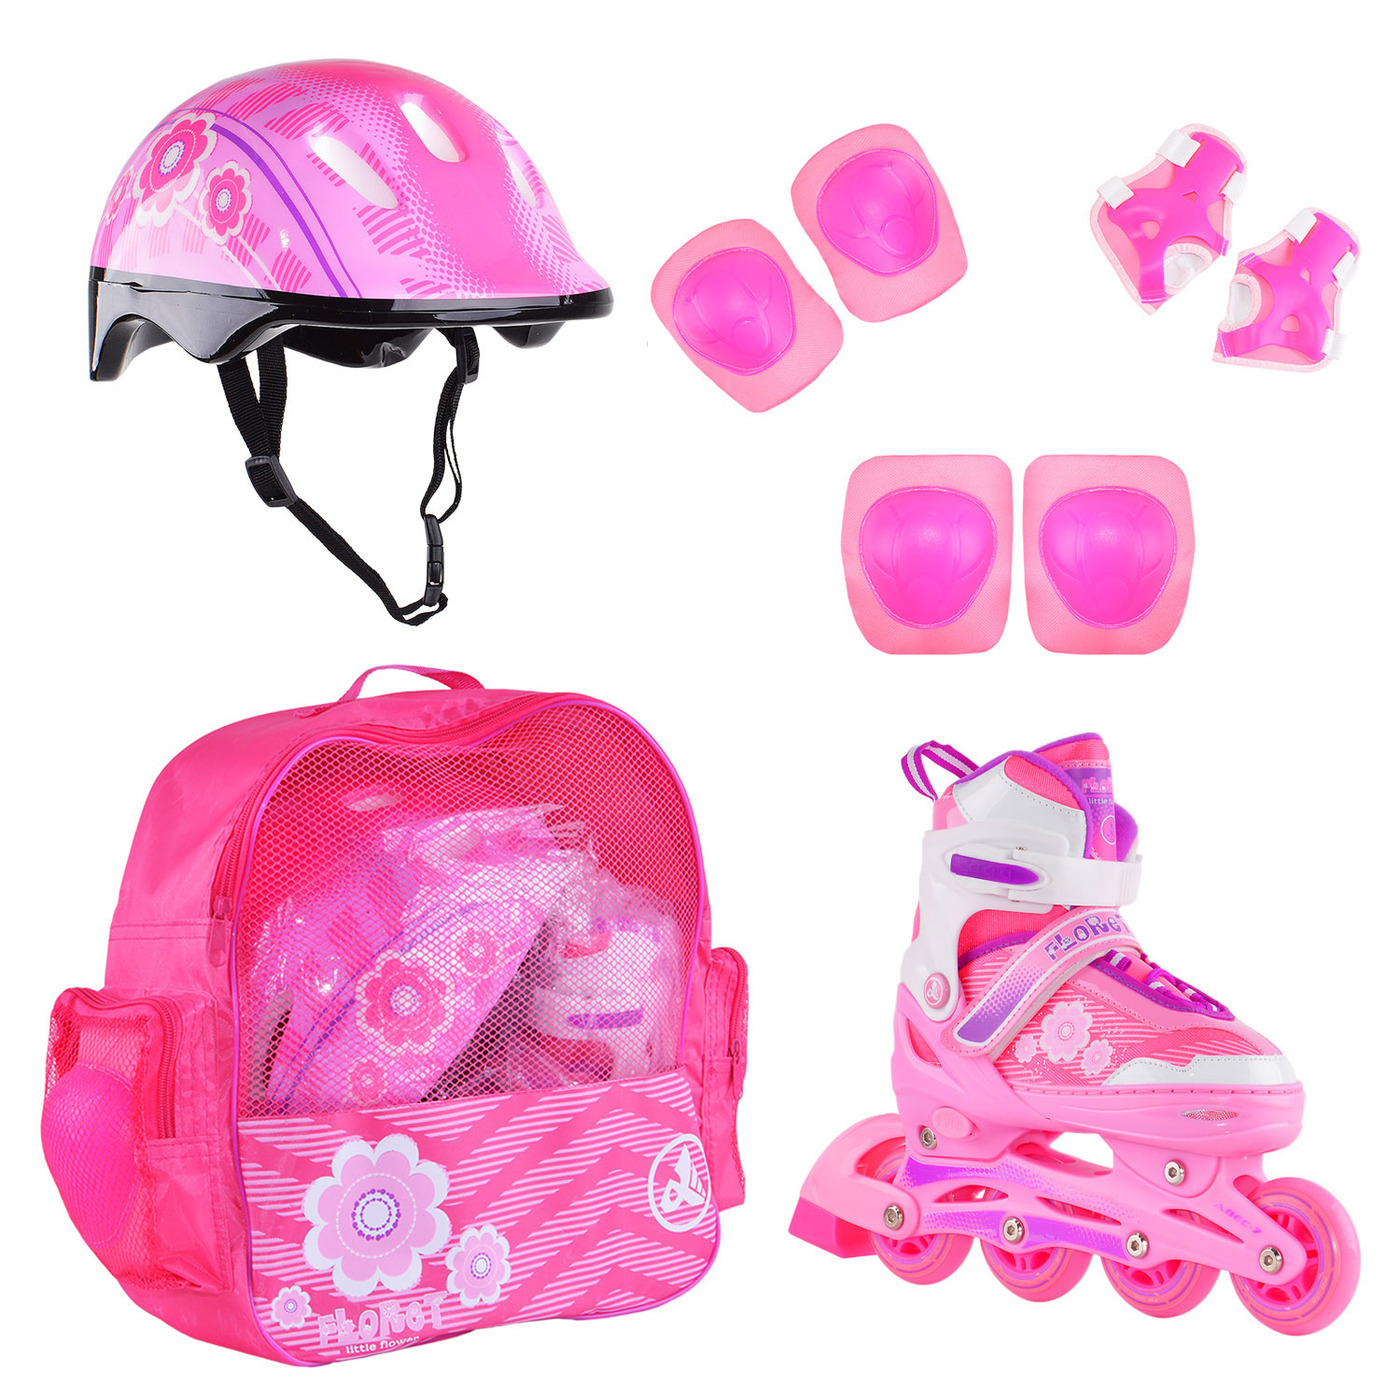 Раздвижные роликовые коньки Alpha Caprice FLORET Wh/Pink/Viol шлем, защита, сумка M:35-38